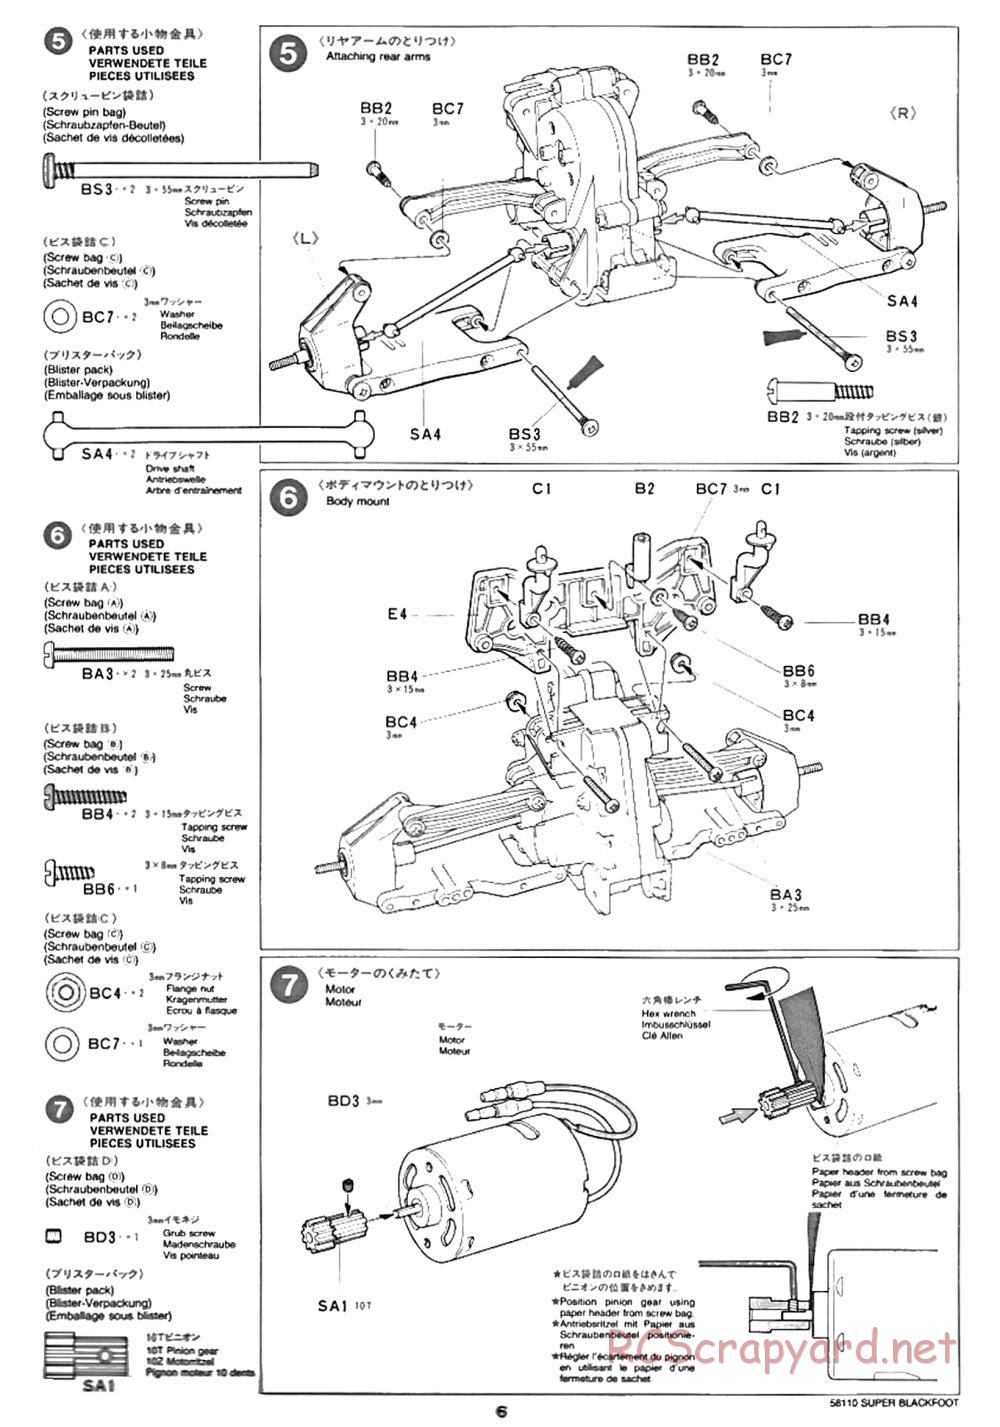 Tamiya - Super Blackfoot Chassis - Manual - Page 6